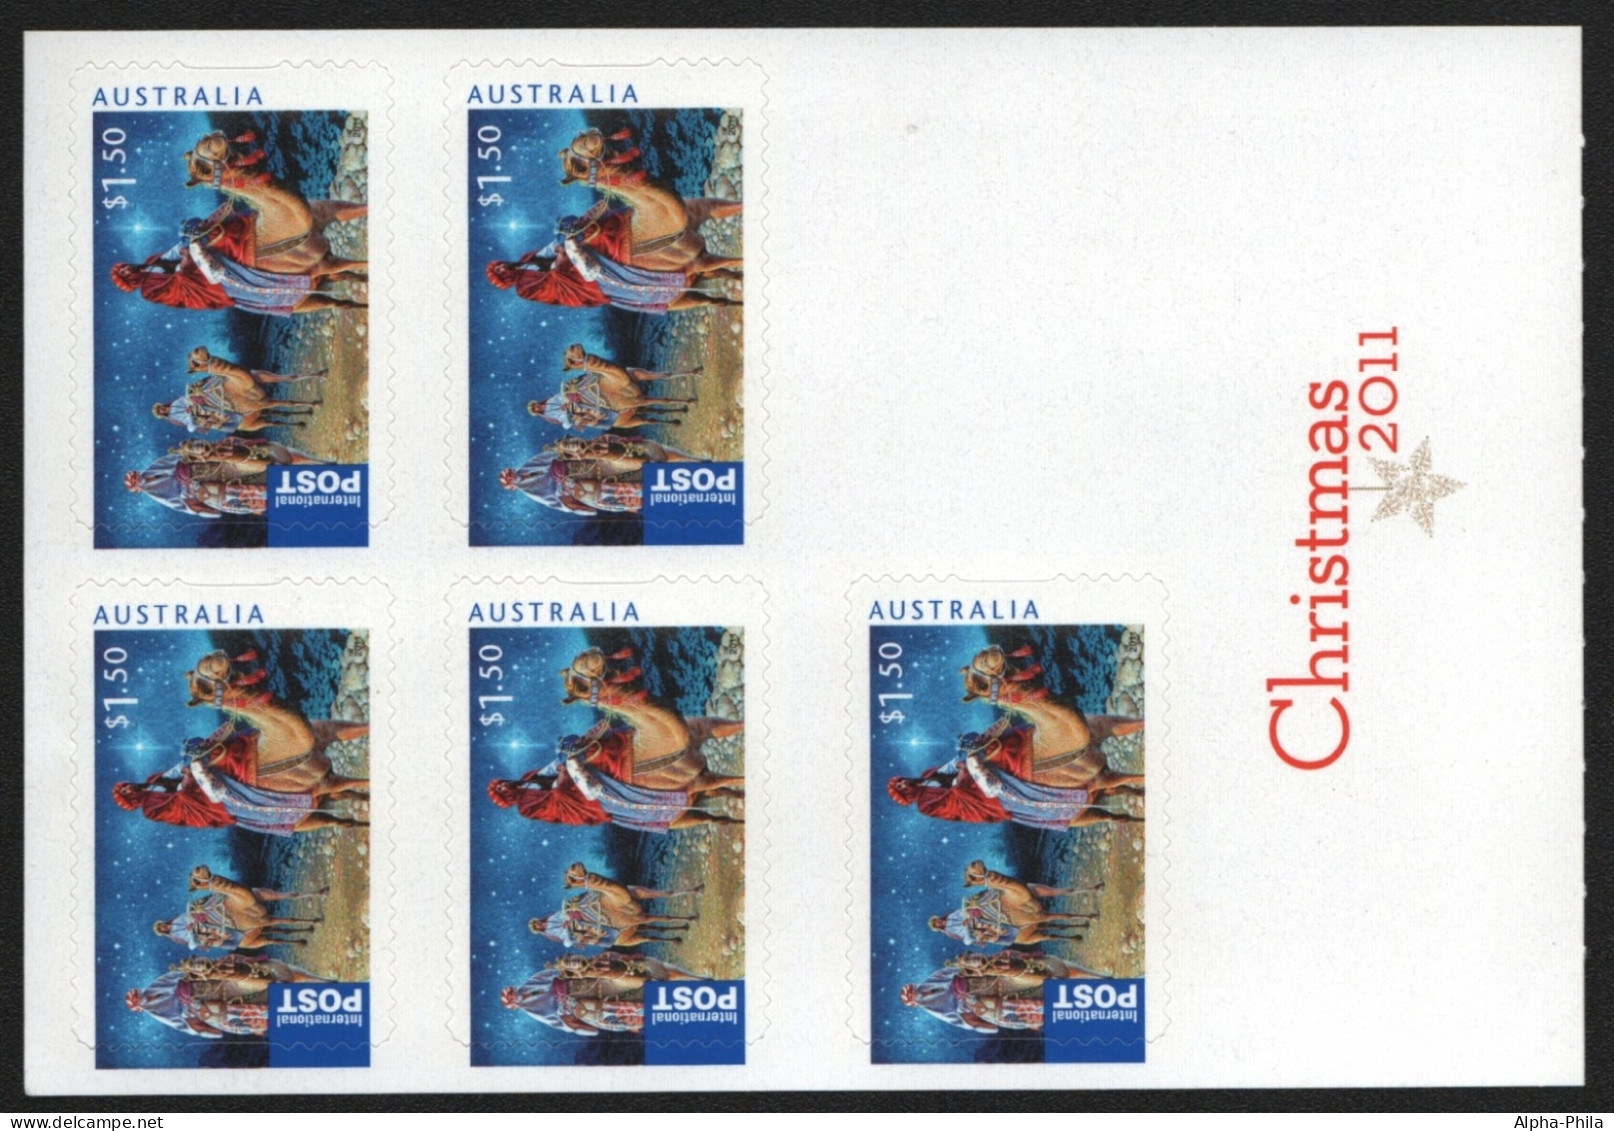 Australien 2011 - Mi-Nr. 3644 I BA ** - MNH - Folienblatt - Weihnachten / X-mas - Ongebruikt